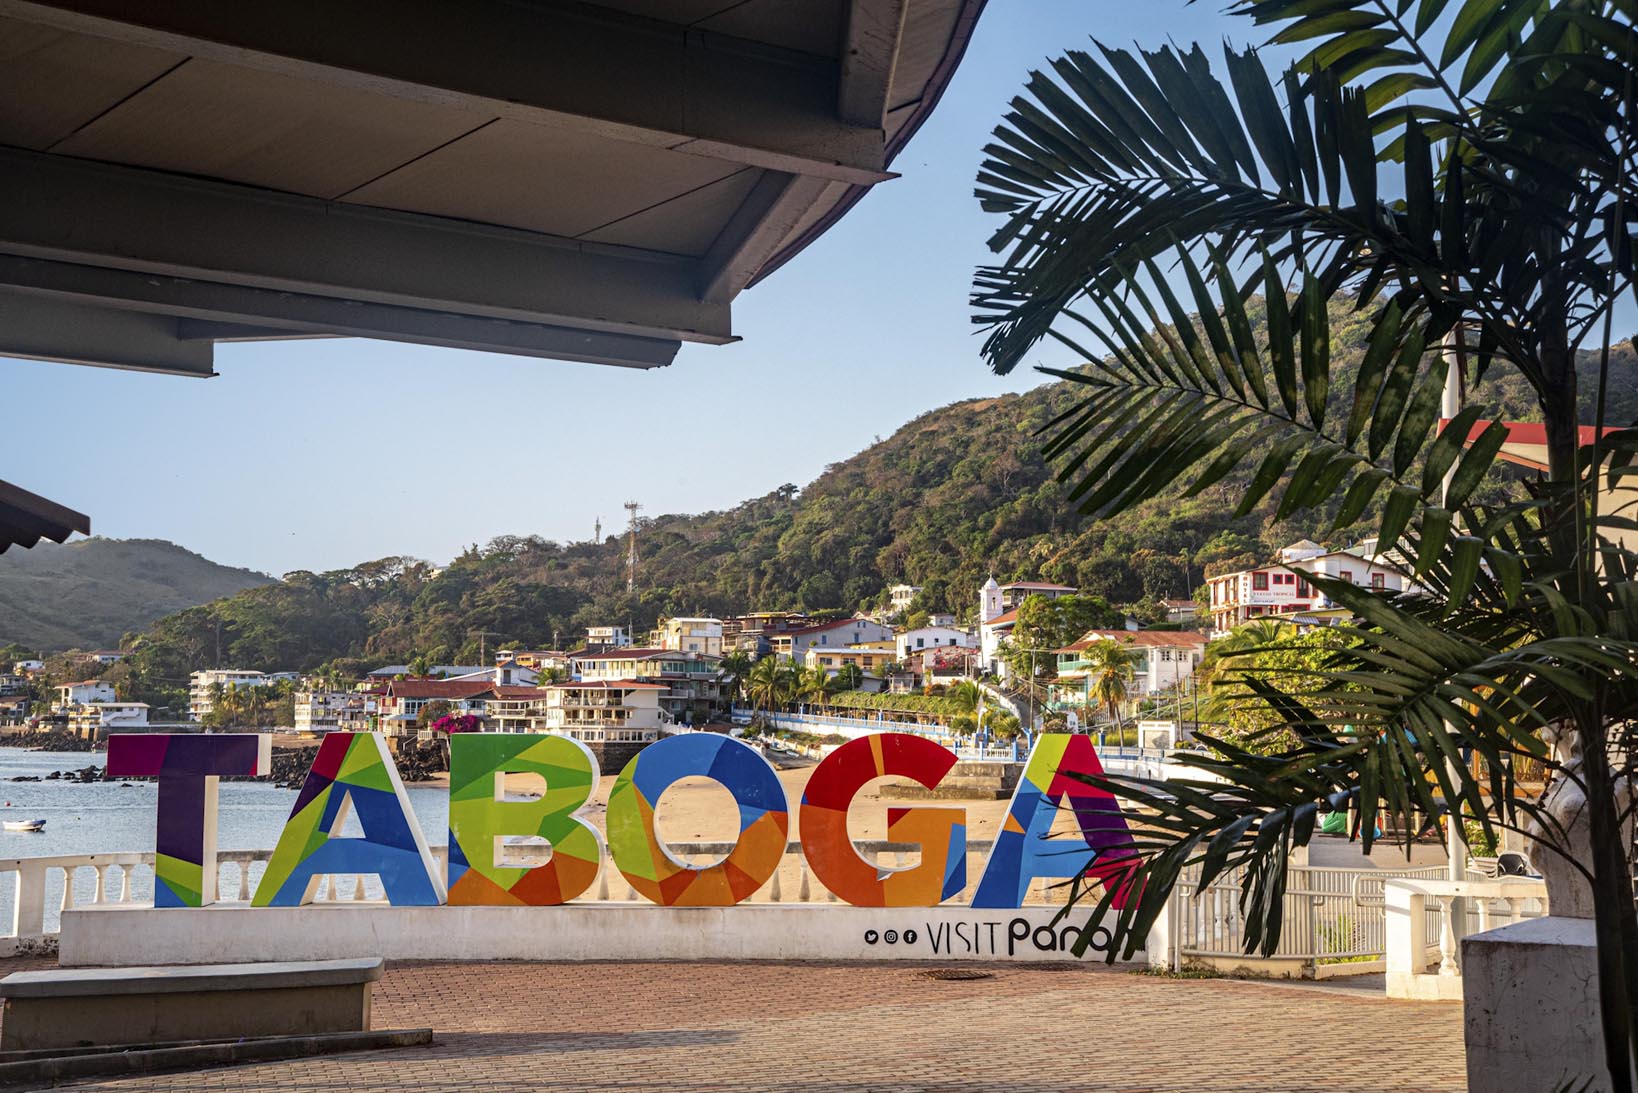 Restricciones irracionales para el ingreso a Taboga – Foco Panamá